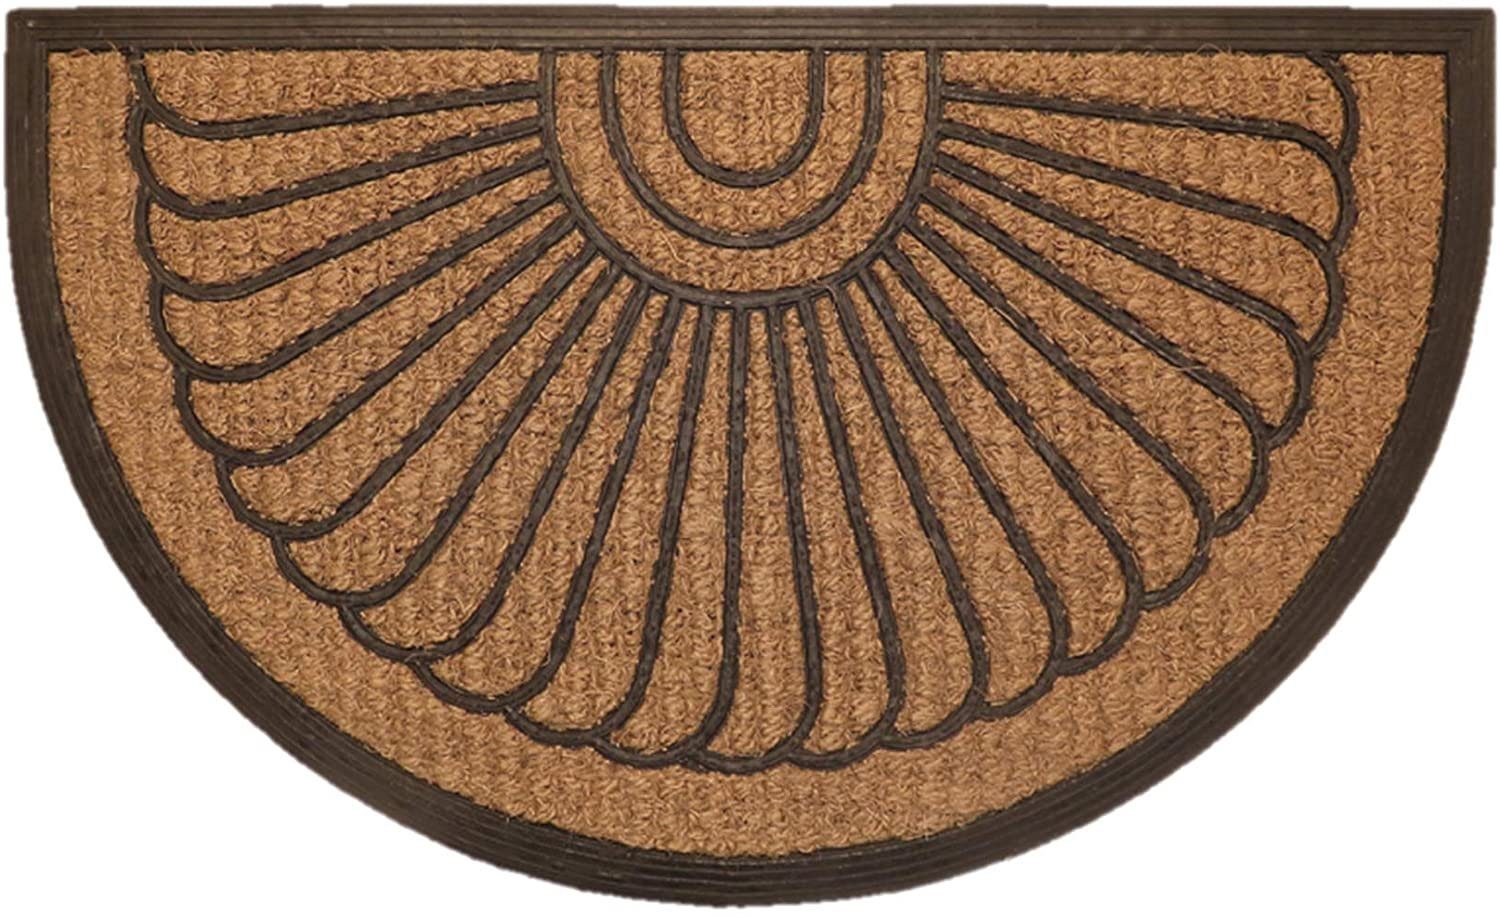 Fußmatte Structure, oKu-Tex, halbrund, Fußmatte, halbrund, Kokosmatte, Kokos, Gummi, außen, 45 x 75 cm, Muschel Kachel Ornamente